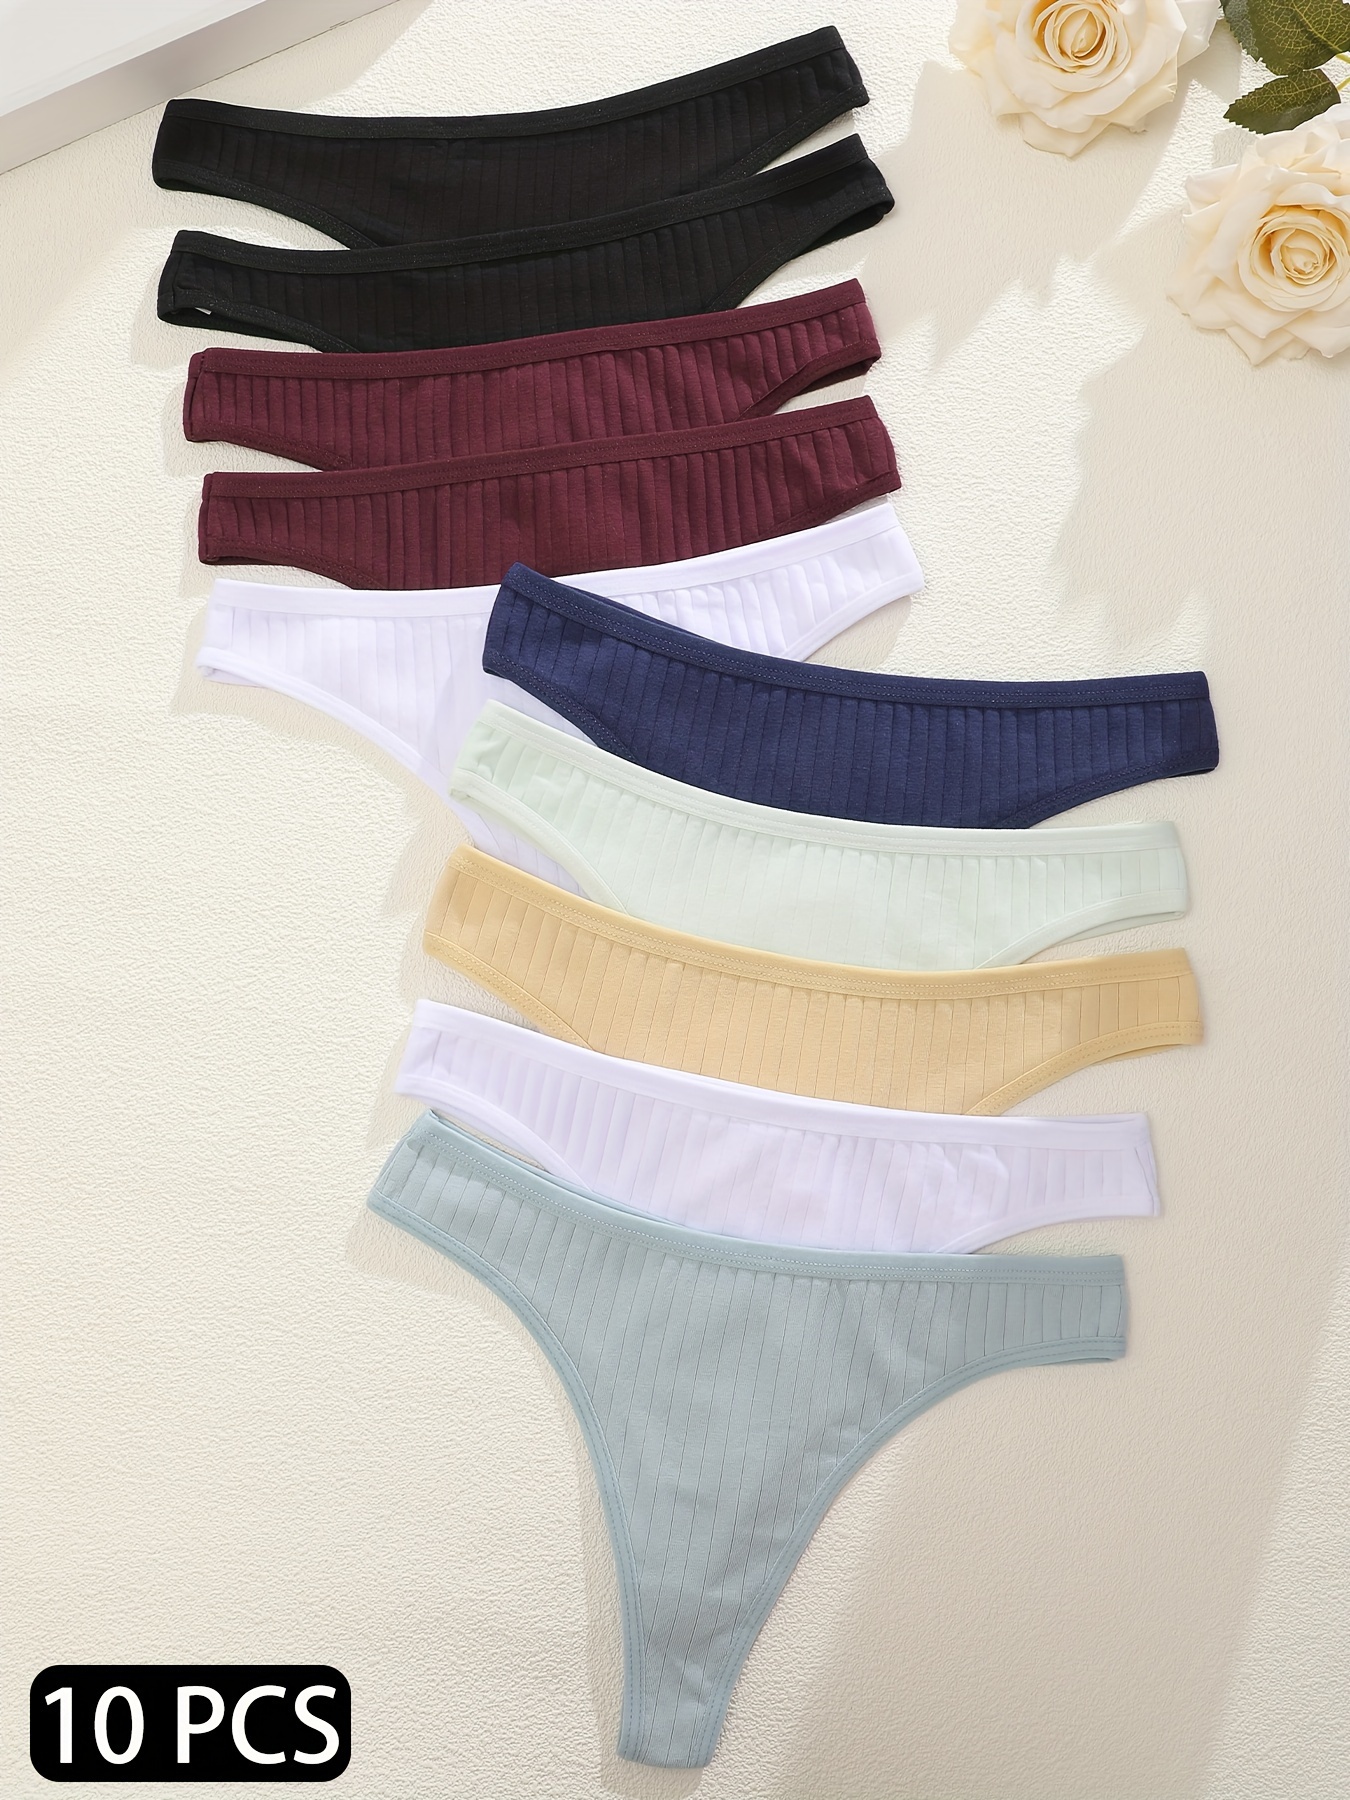 10pcs Breathable Cotton Underwear for Women